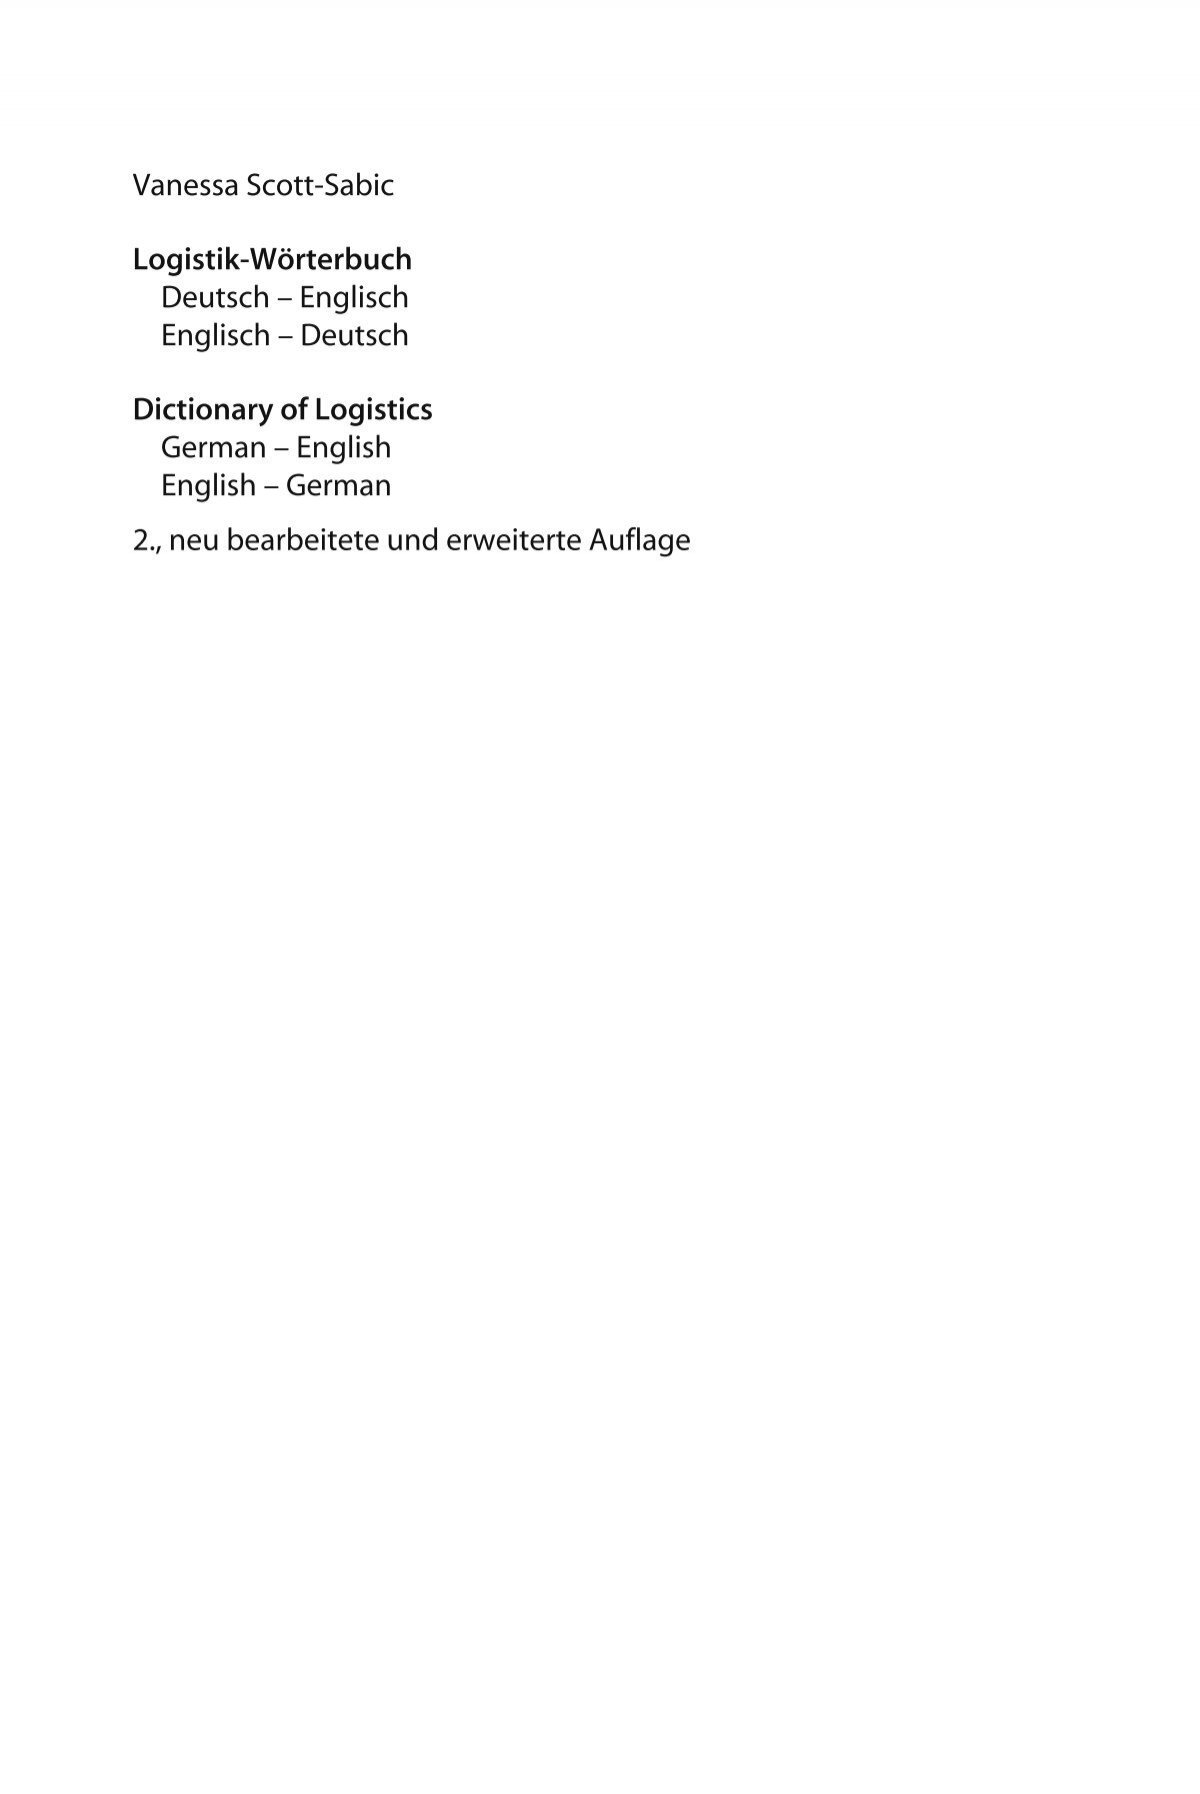 Vanessa Scott Sabic Logistik Worterbuch Deutsch Brussig Online